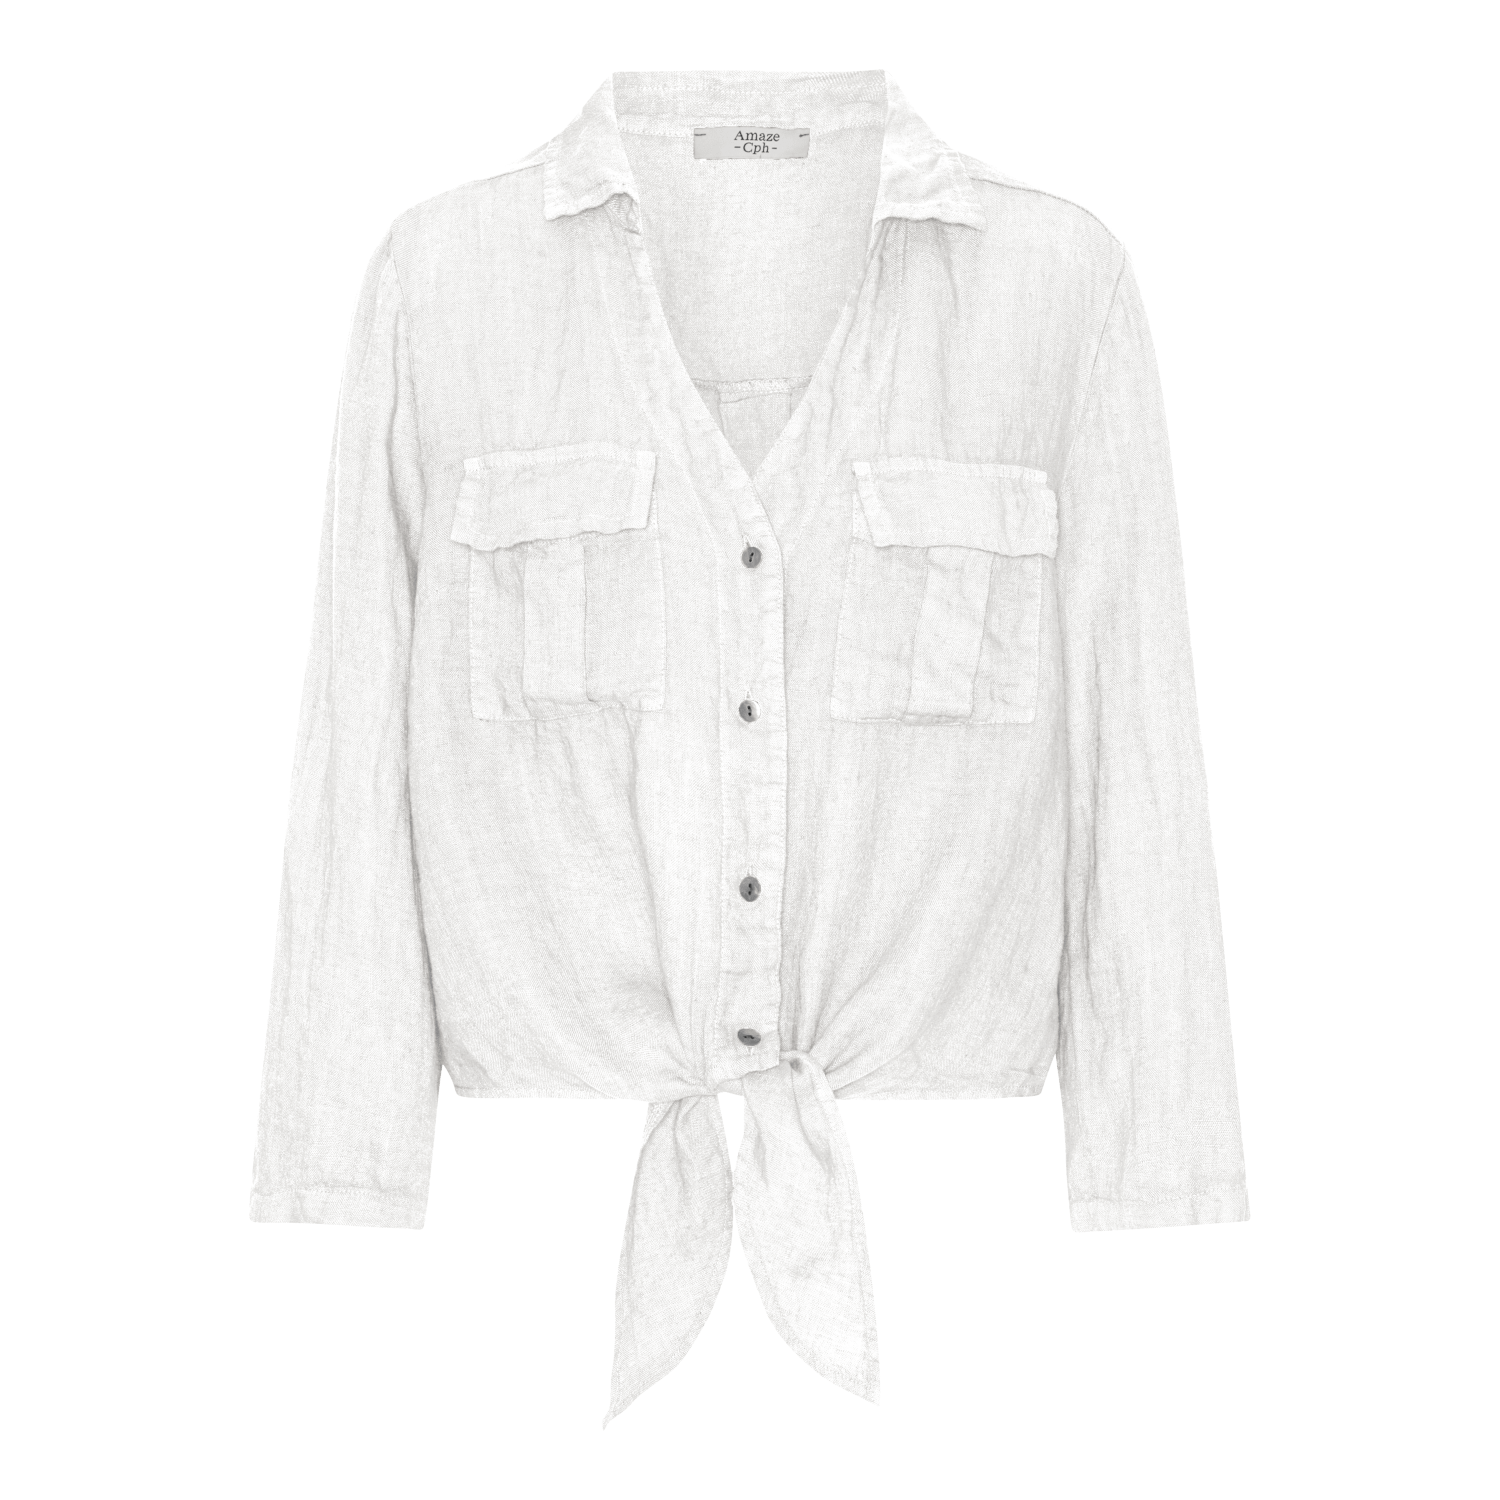 Linen Tie Shirt - White - Amaze Cph - White - S/M